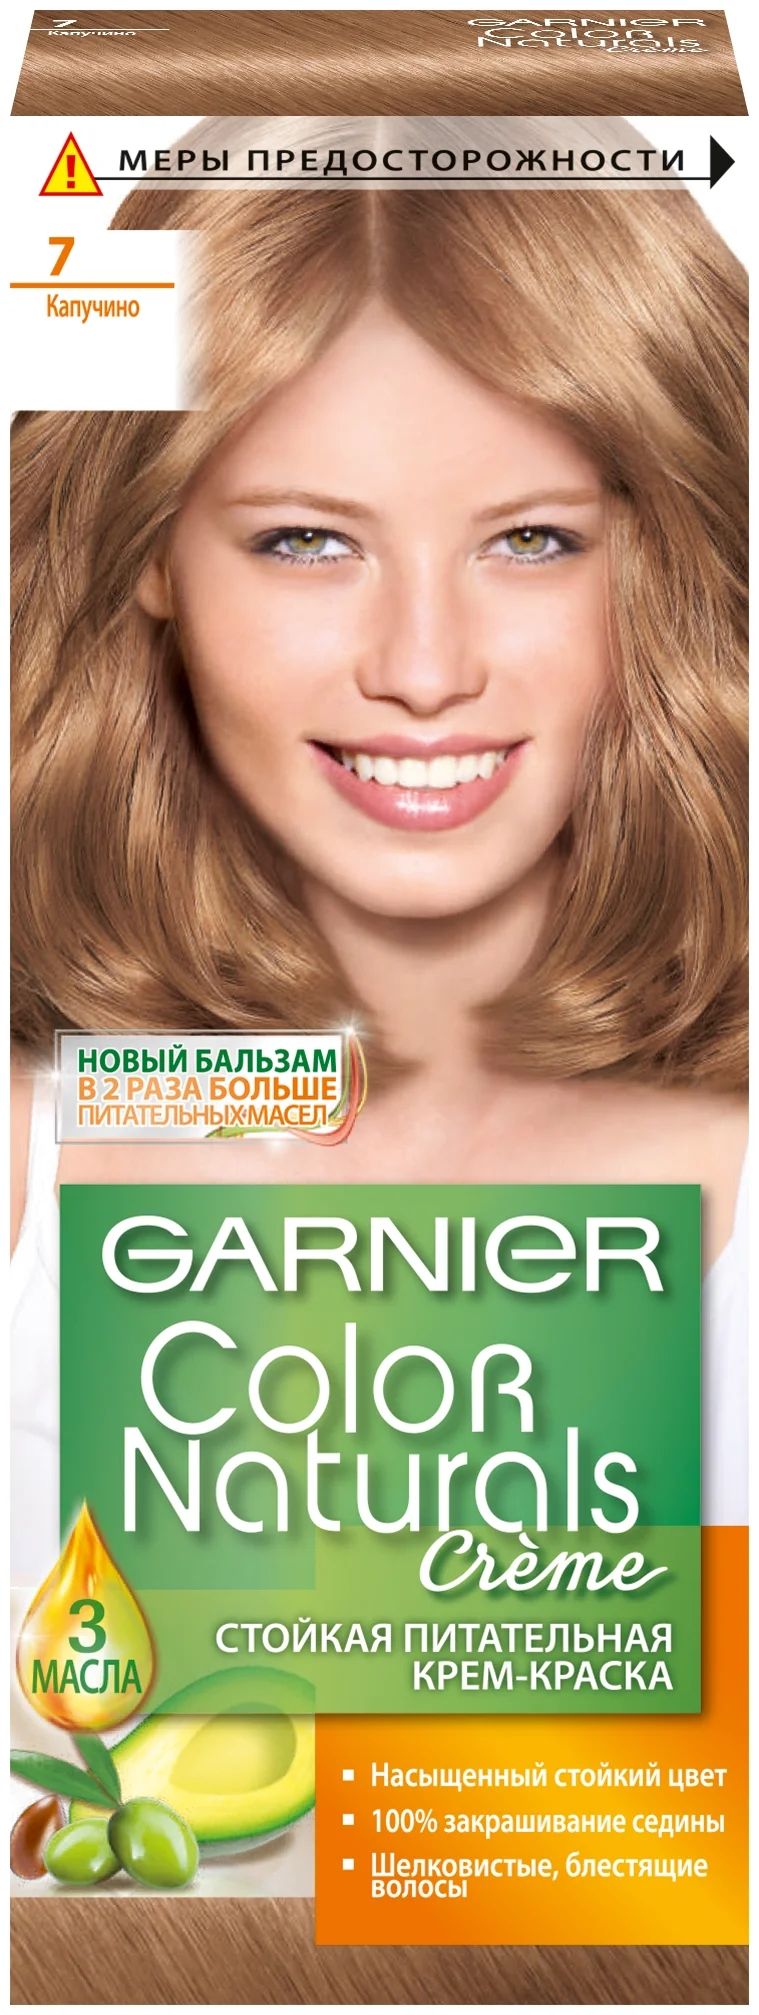 Garnier naturals отзывы. Гарнер капучино 7 краска. Краска Garnier Color naturals. Гарньер краска для волос капучино. Краска для волос гарньер 7.